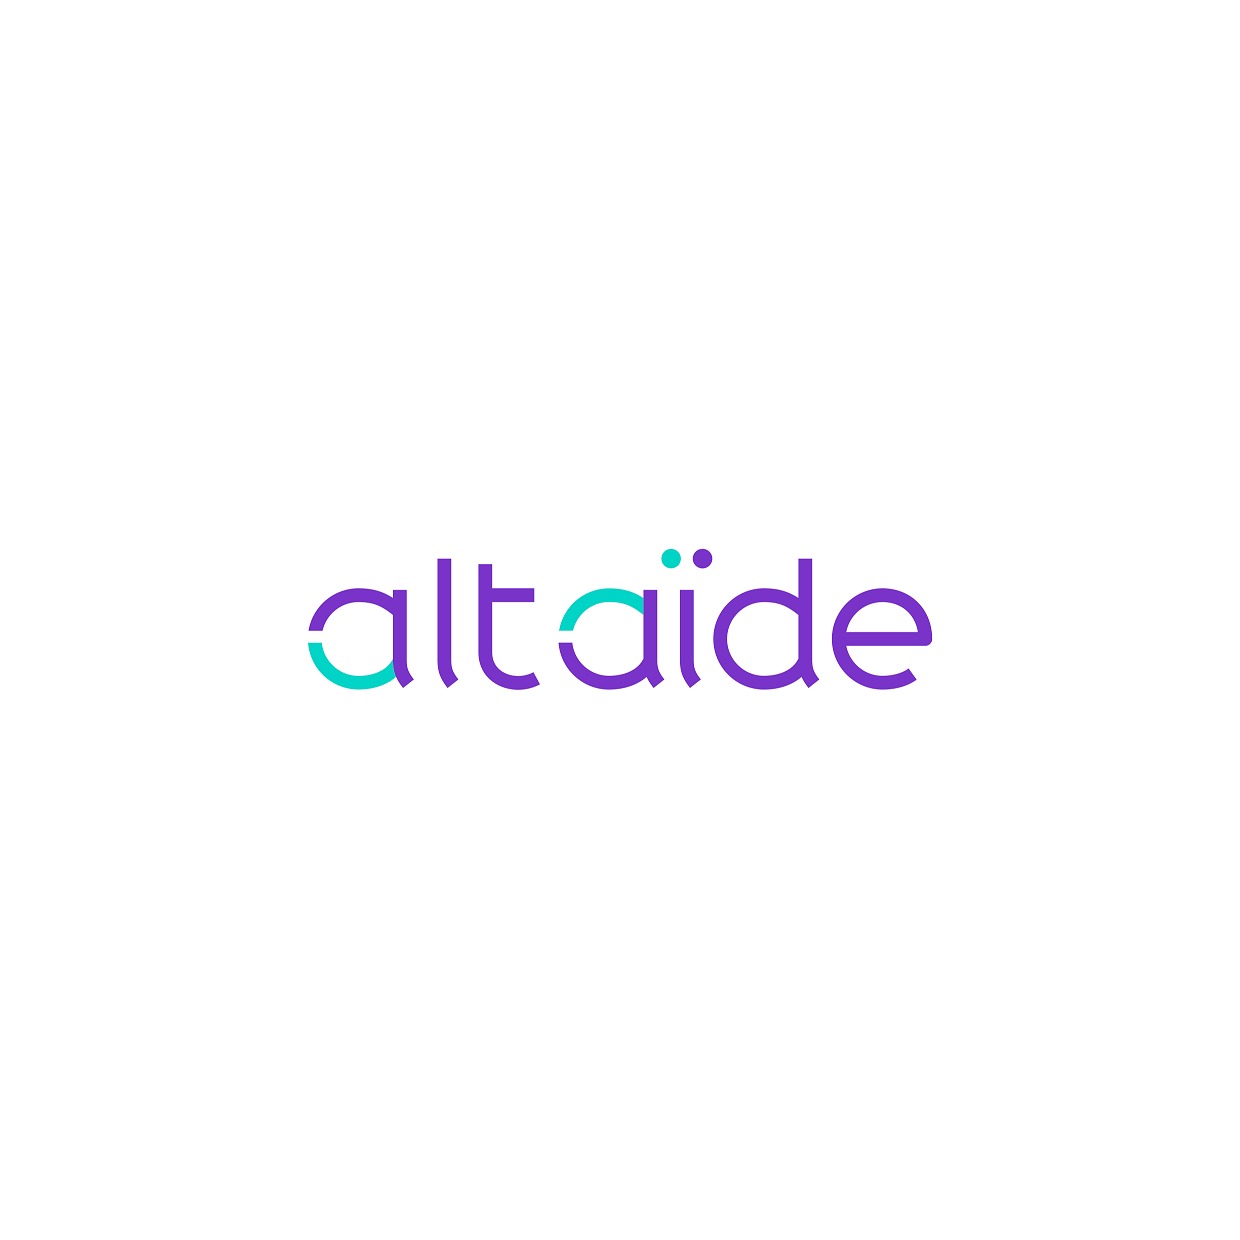 the Altaïde logo.